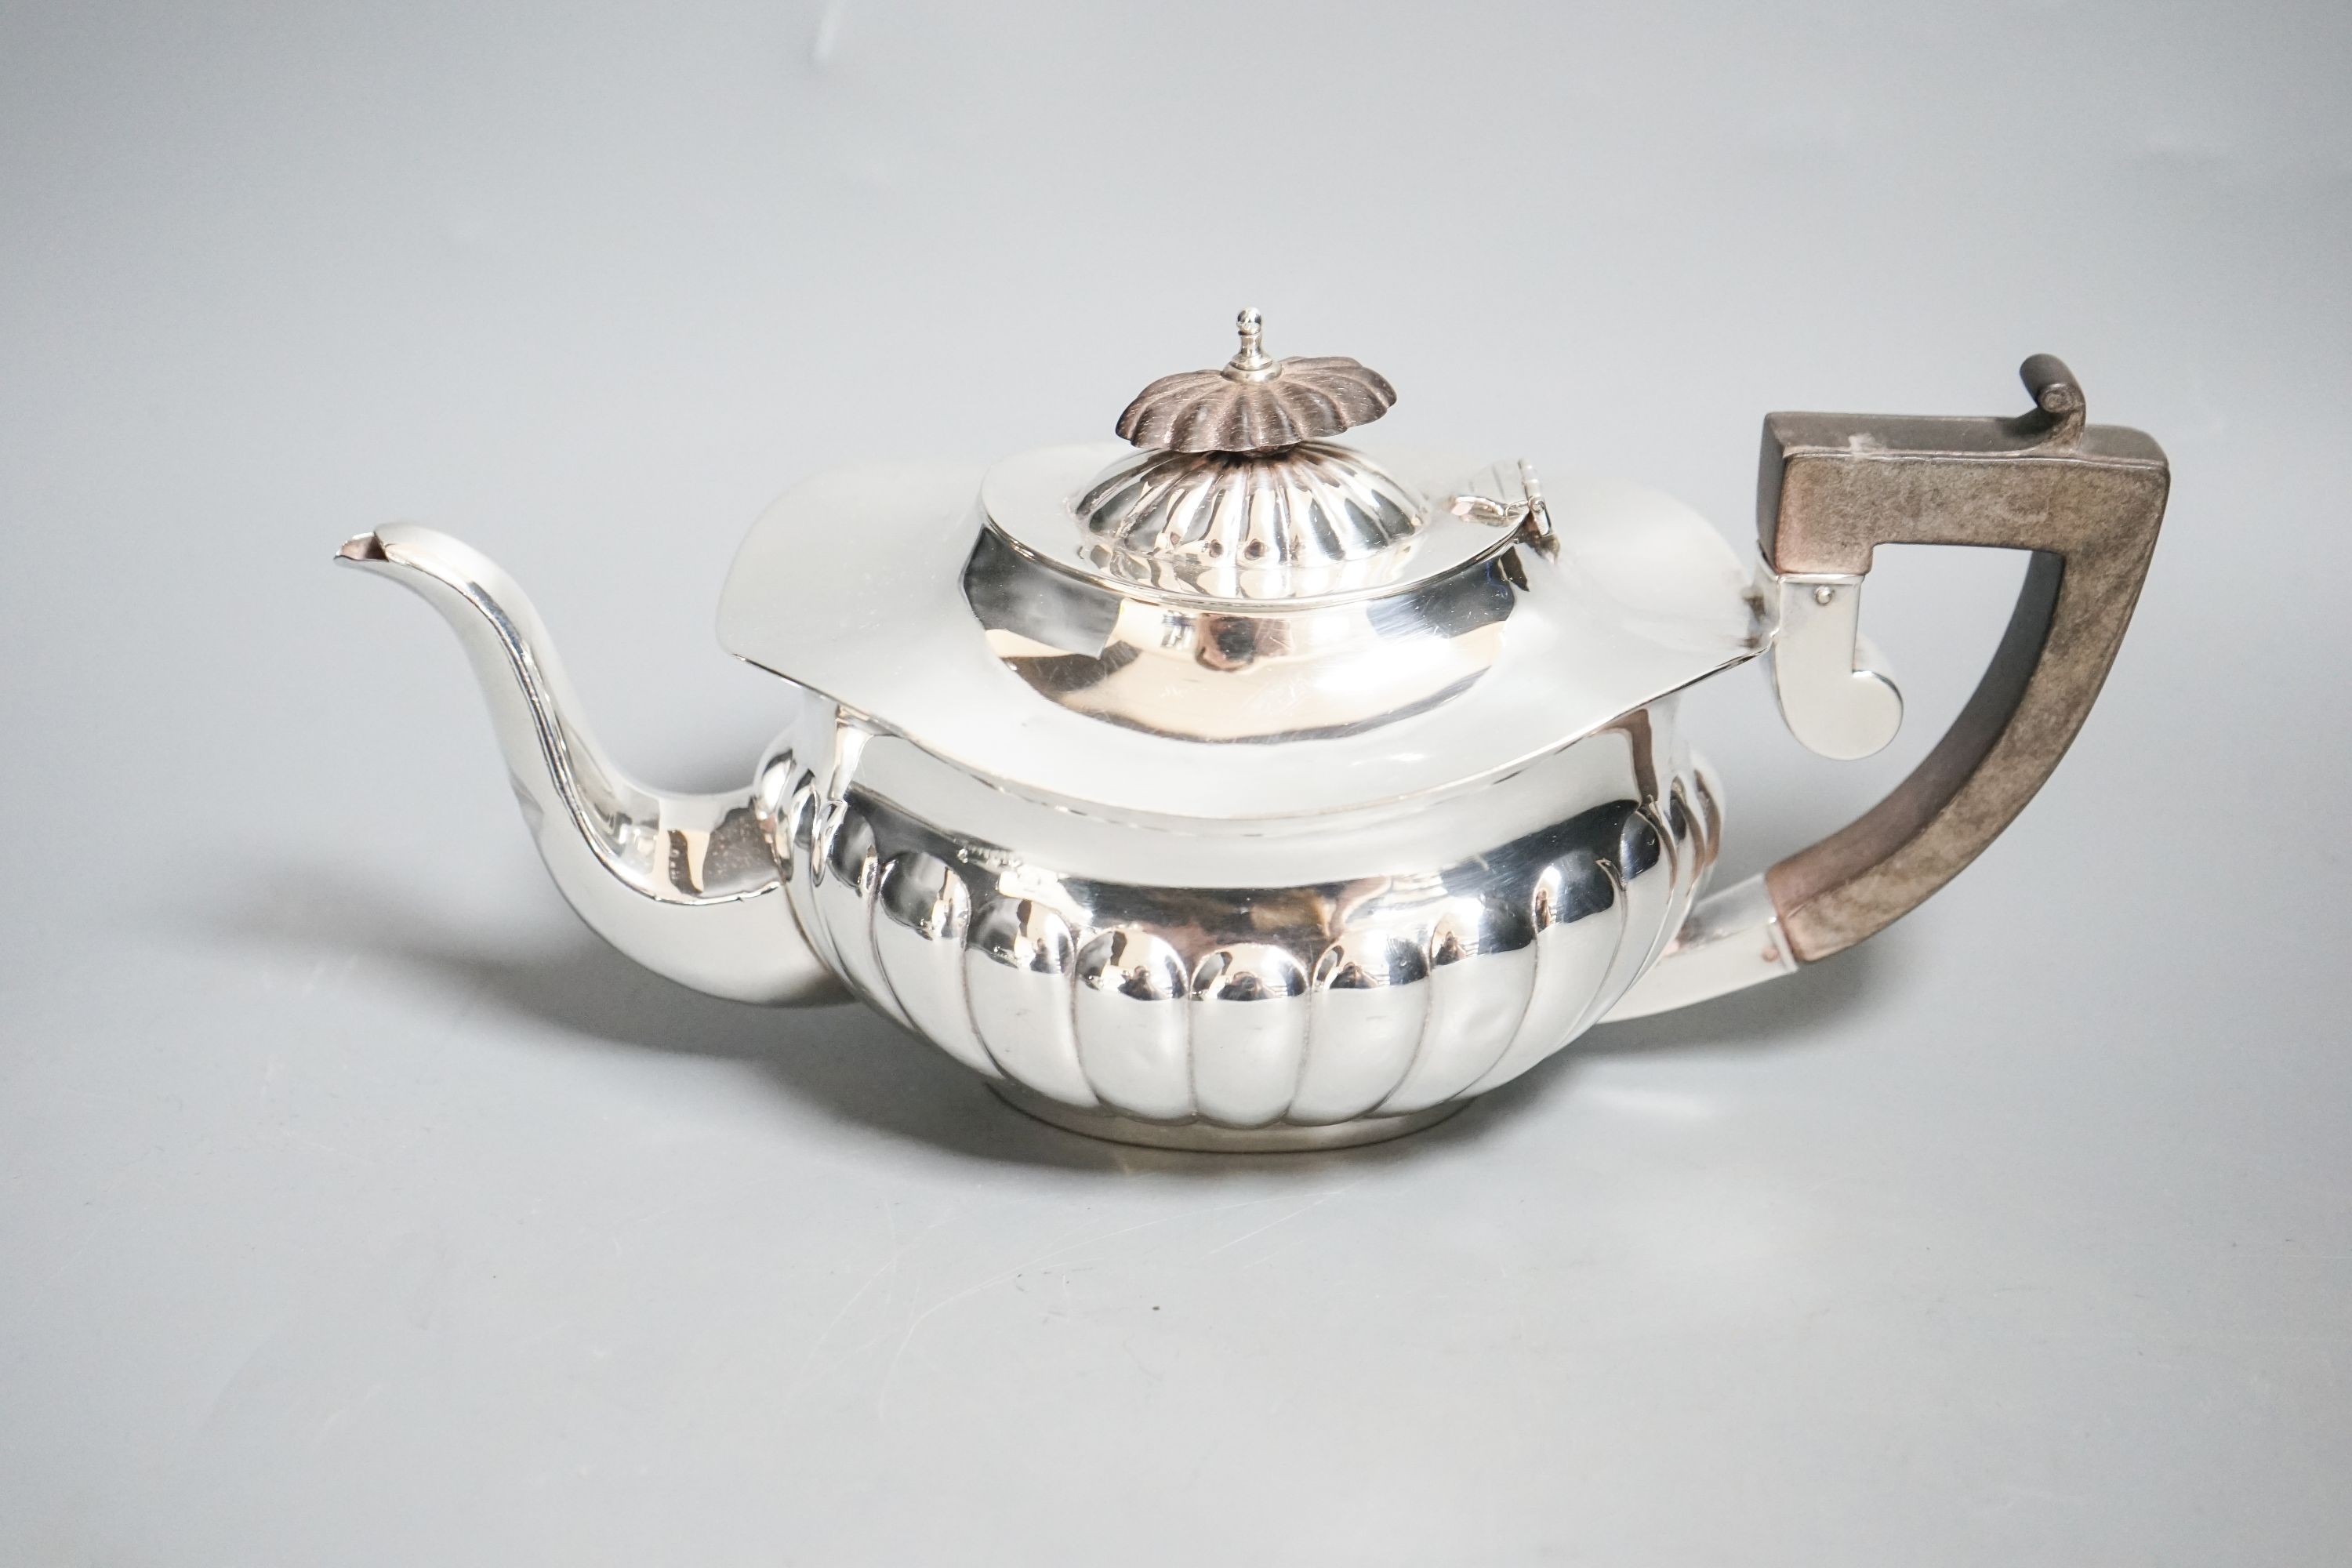 An Edwardian demi-fluted silver three piece bachelor's tea set, Chester, 1909, gross 15.5 oz.